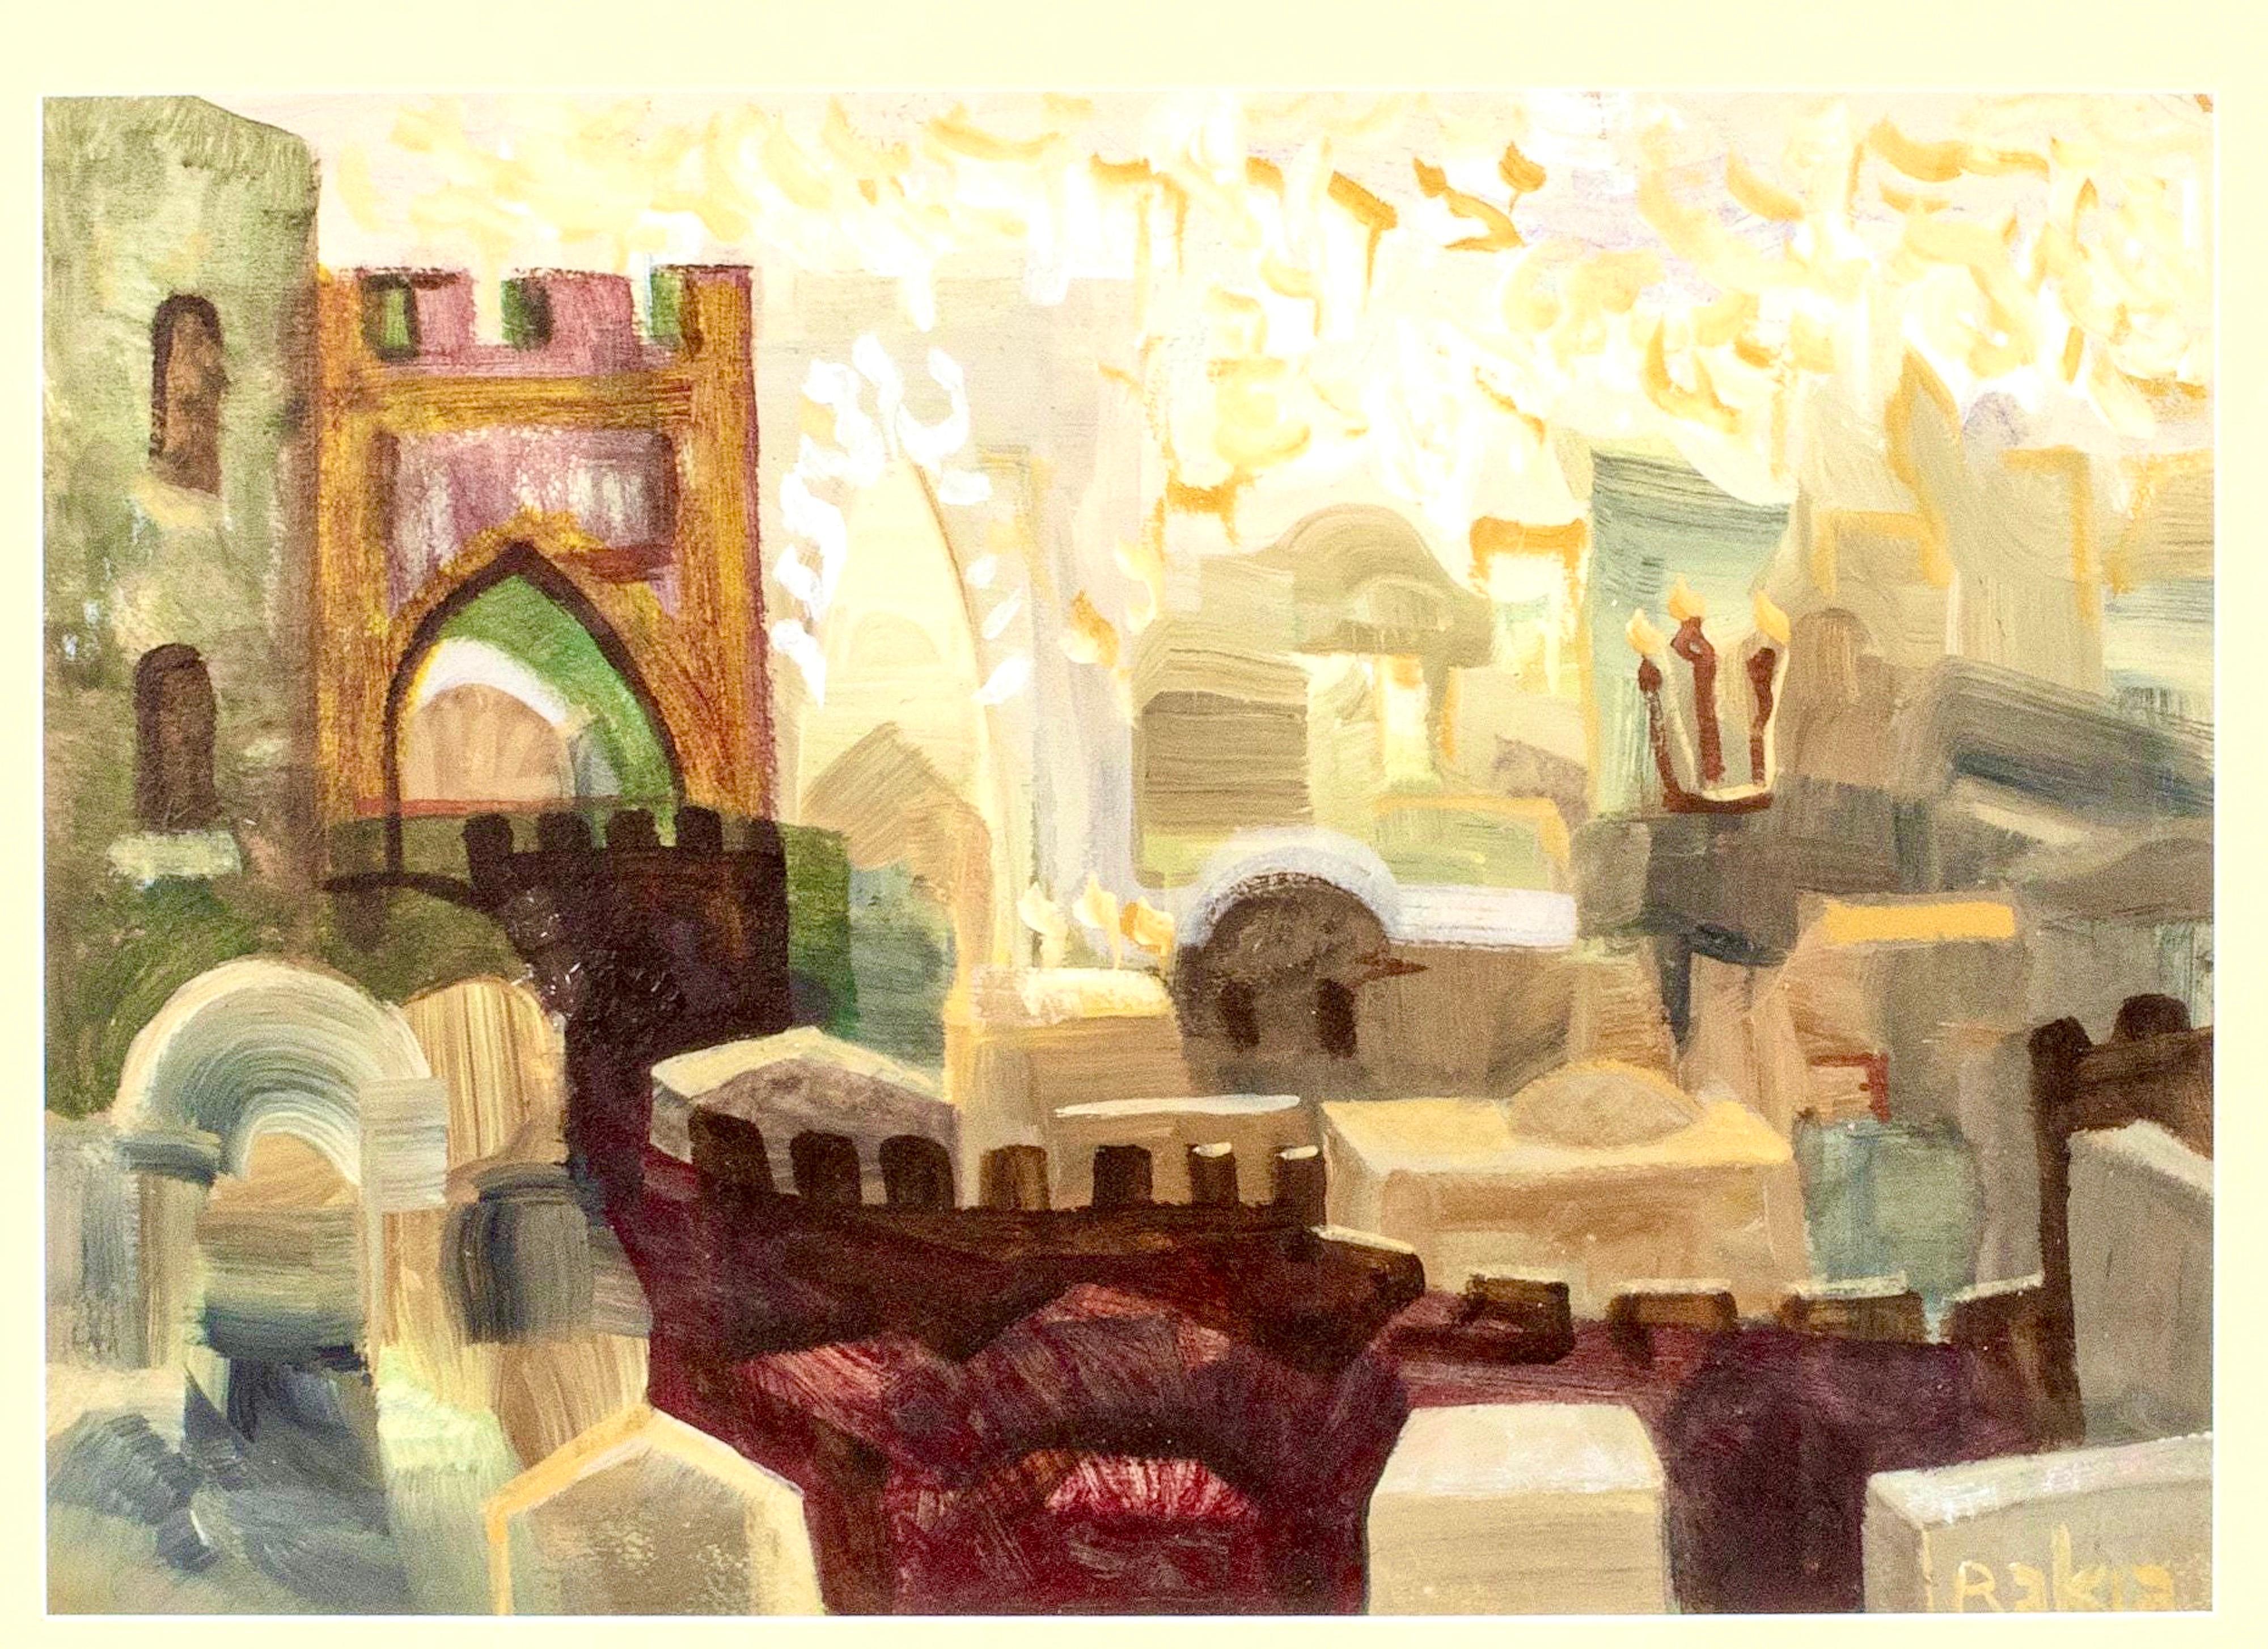 Peinture à l'huile juive mystique Kabbalah de Jérusalem paysage urbain lettres hébraïques judaïques - Painting de David Rakia